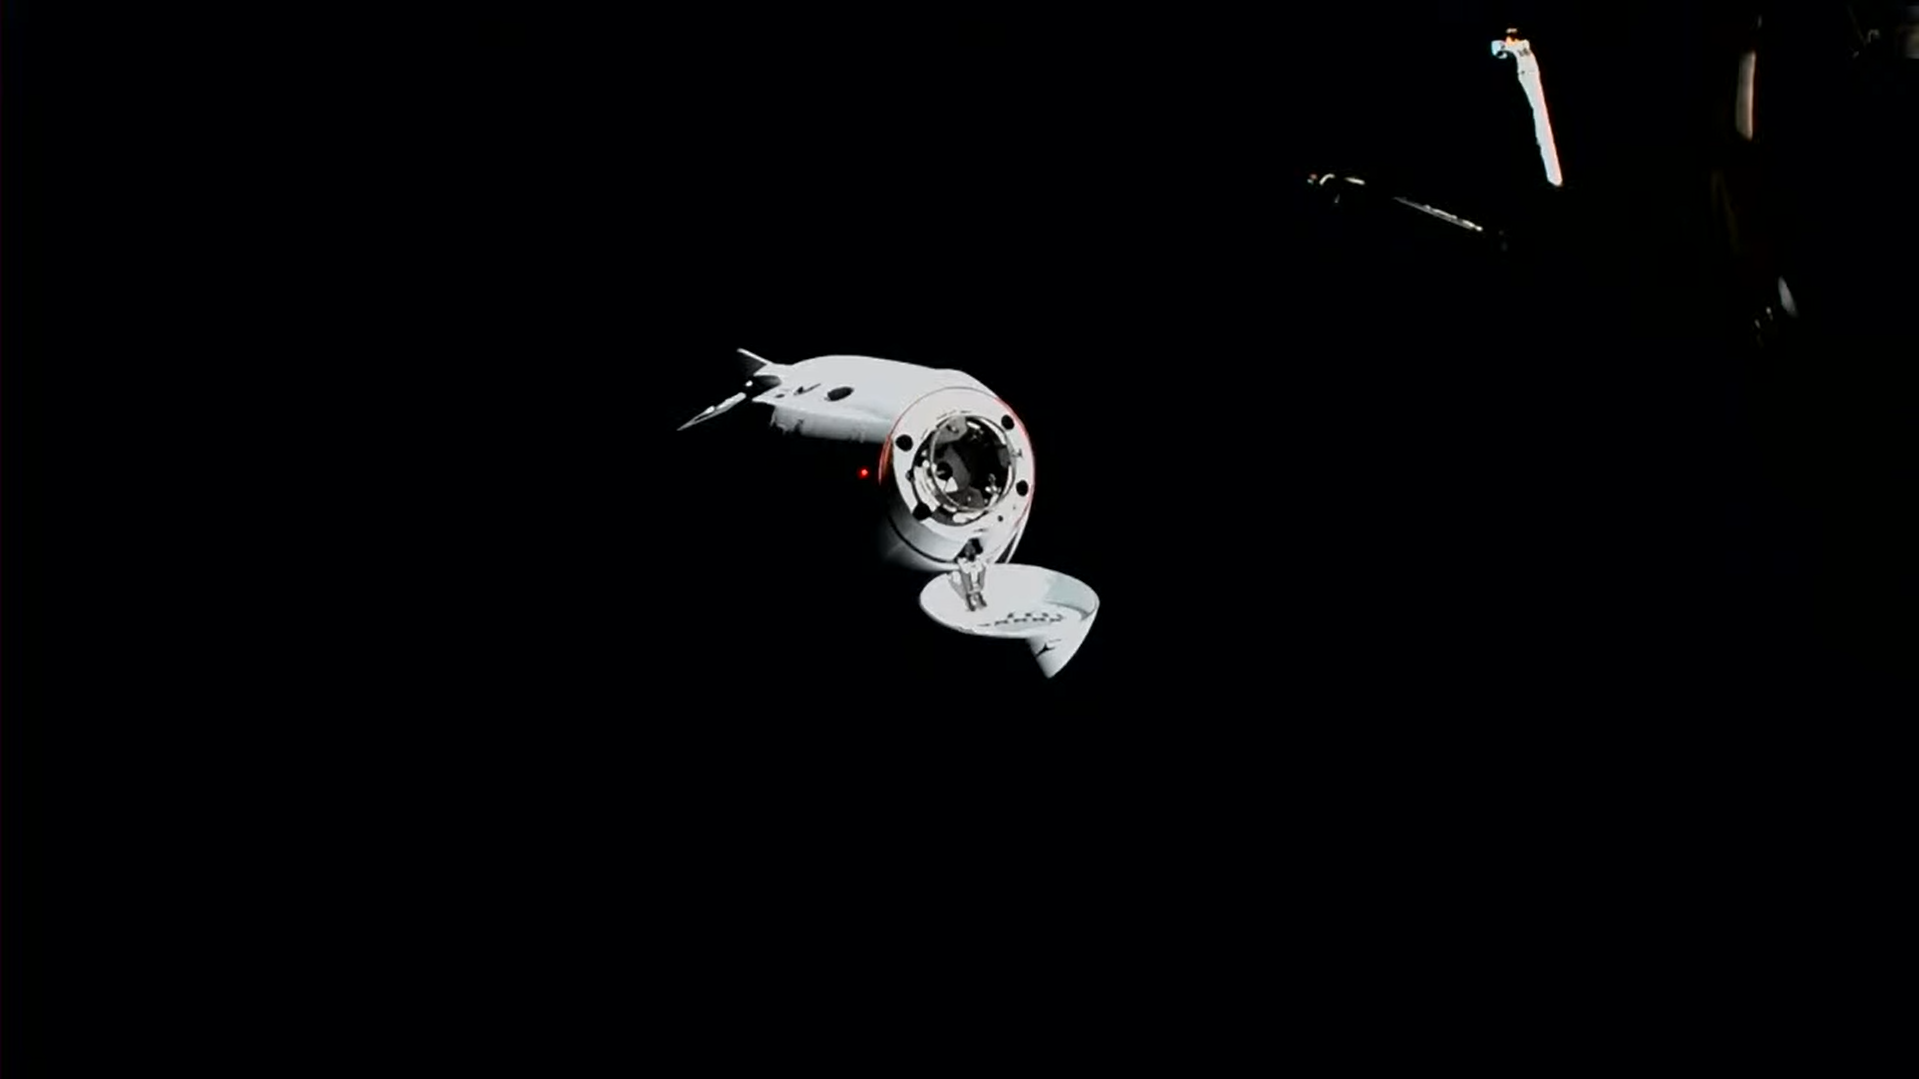 Dragon Endurance przed dokowaniem do ISS (Źródło: SpaceX)